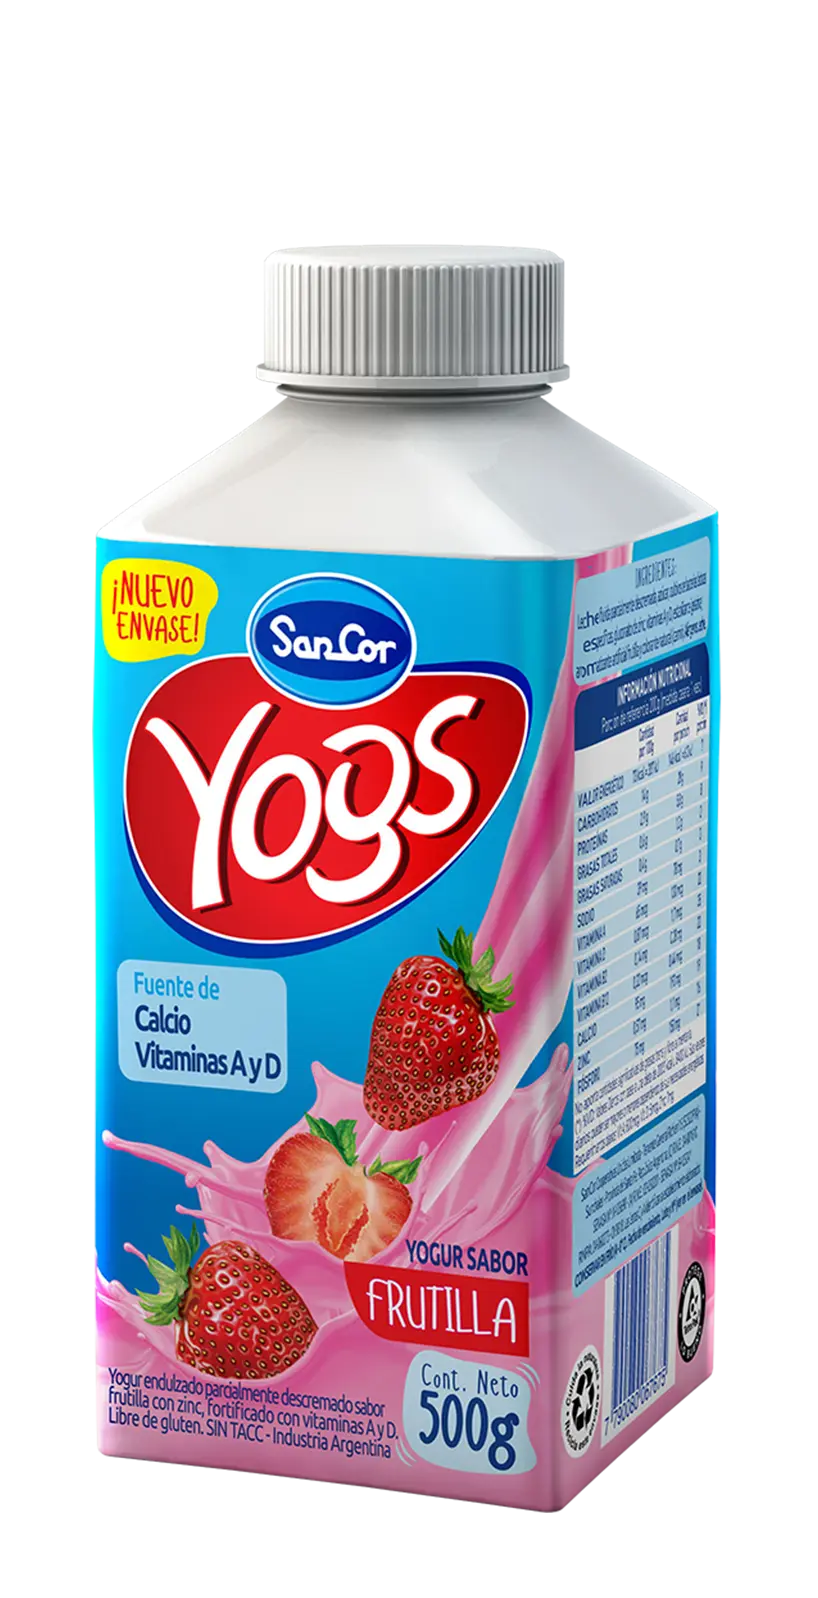 yogs frutilla - Cuántas calorías tiene el yogur ilolay